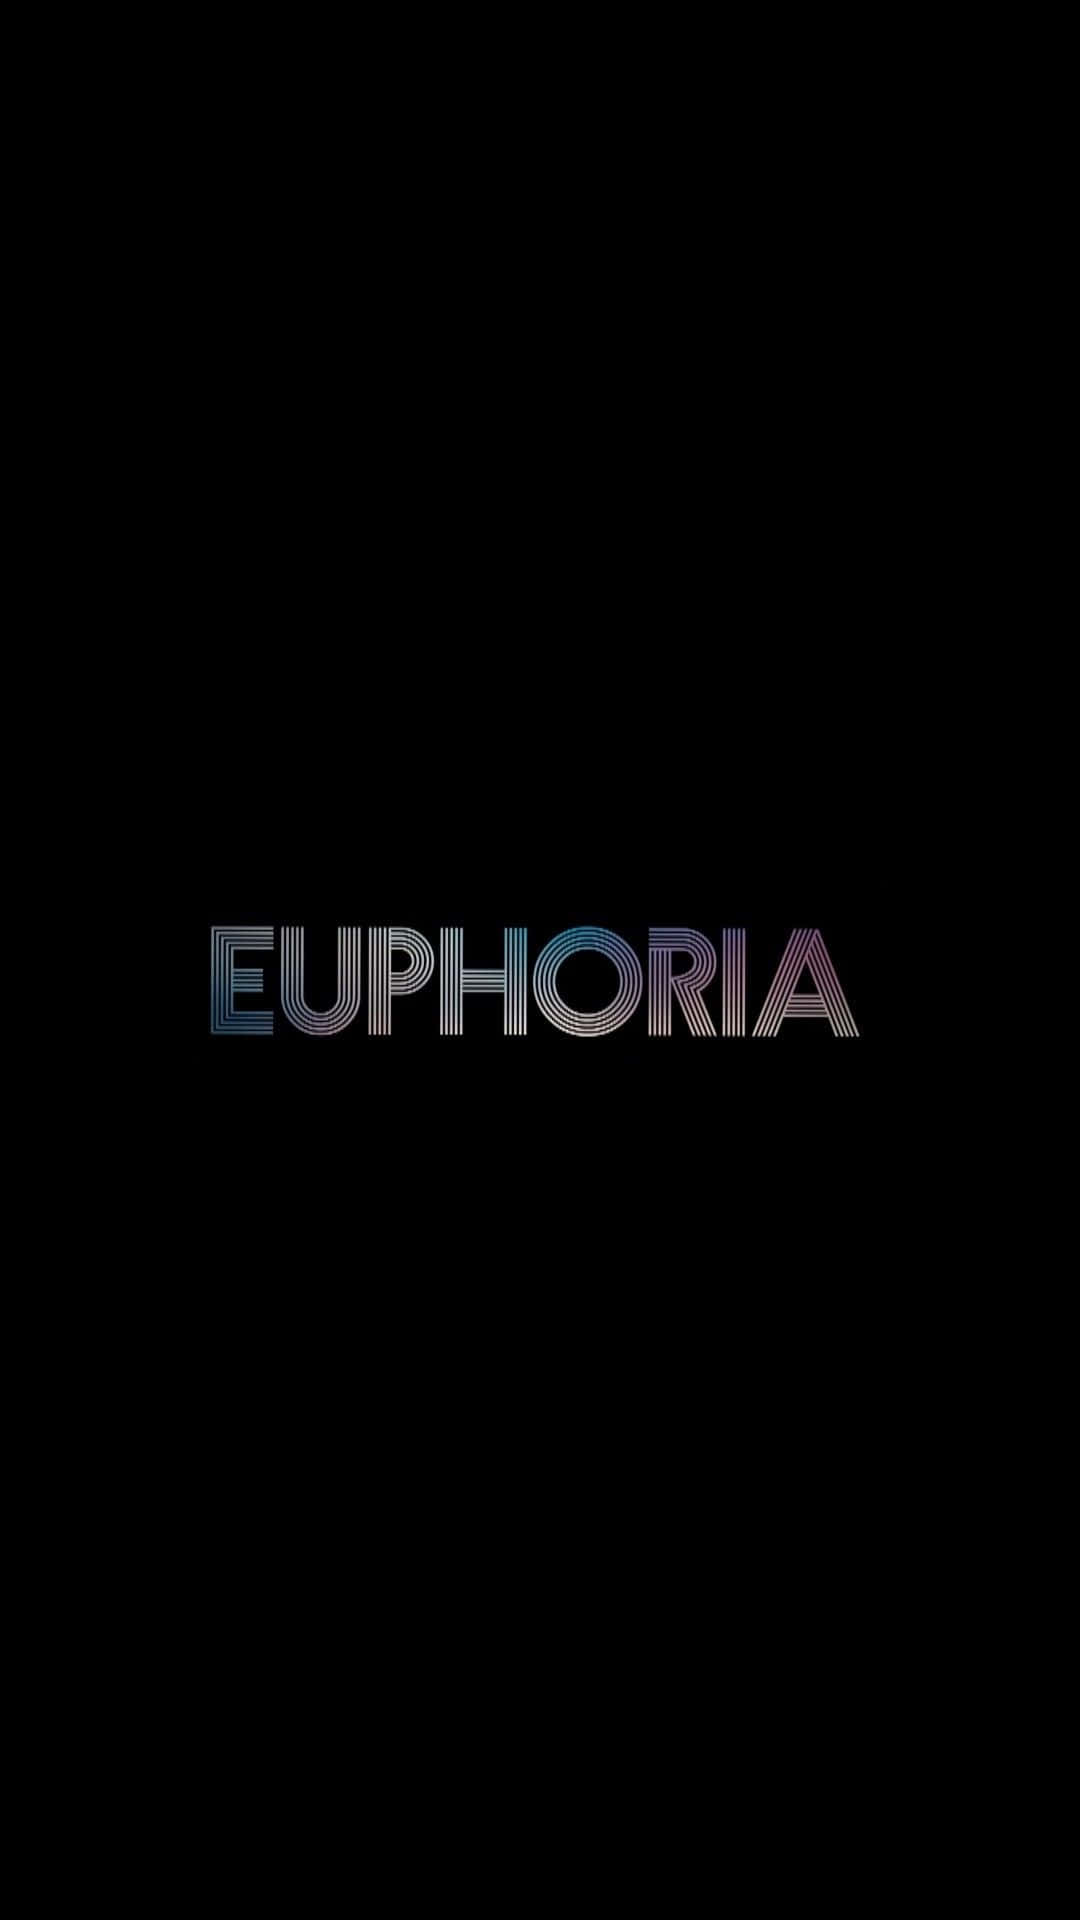 Logode Euforia En Un Fondo Negro Fondo de pantalla